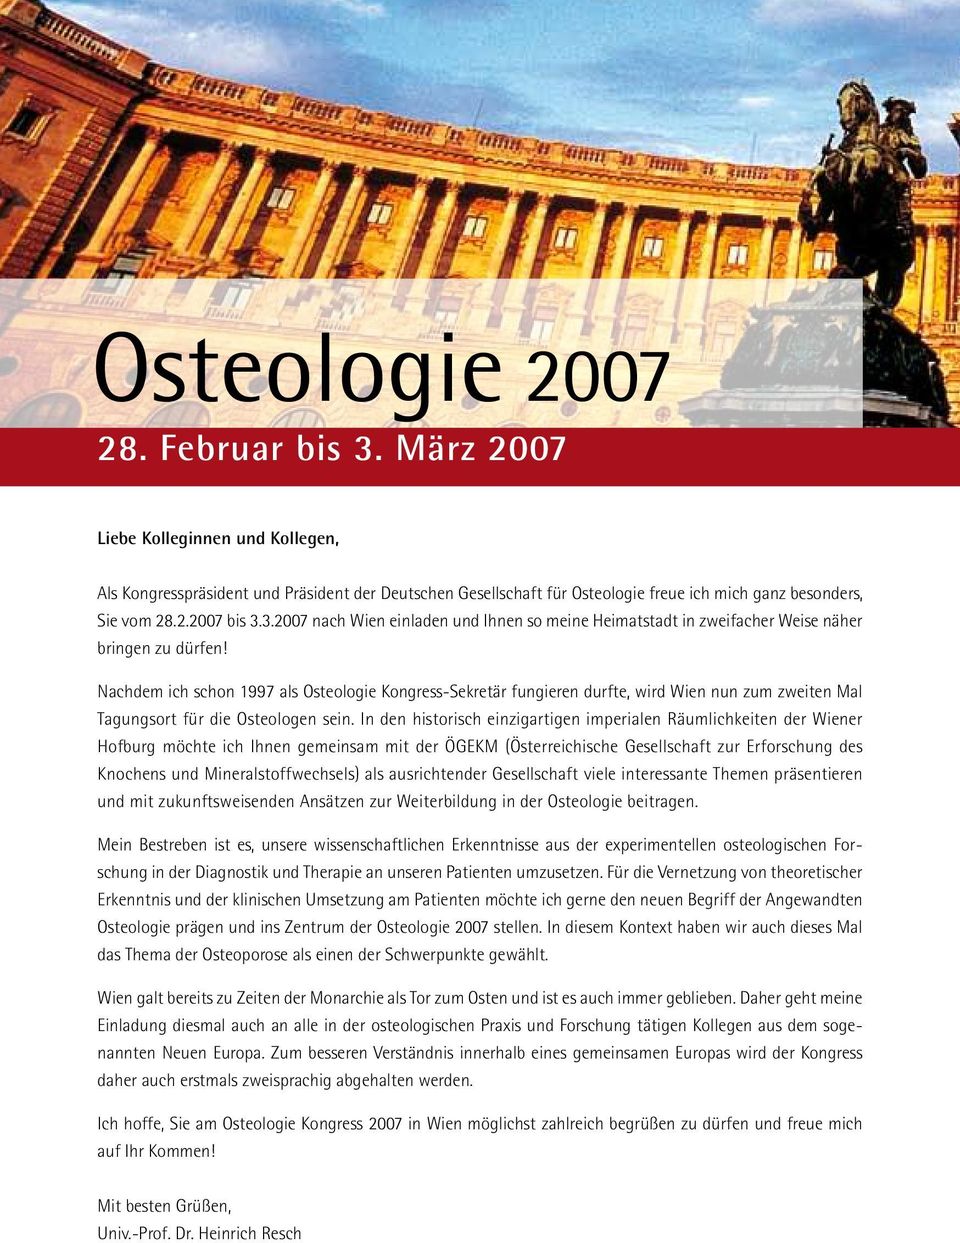 In den historisch einzigartigen imperialen Räumlichkeiten der Wiener Hofburg möchte ich Ihnen gemeinsam mit der ÖGEKM (Österreichische Gesellschaft zur Erforschung des Knochens und